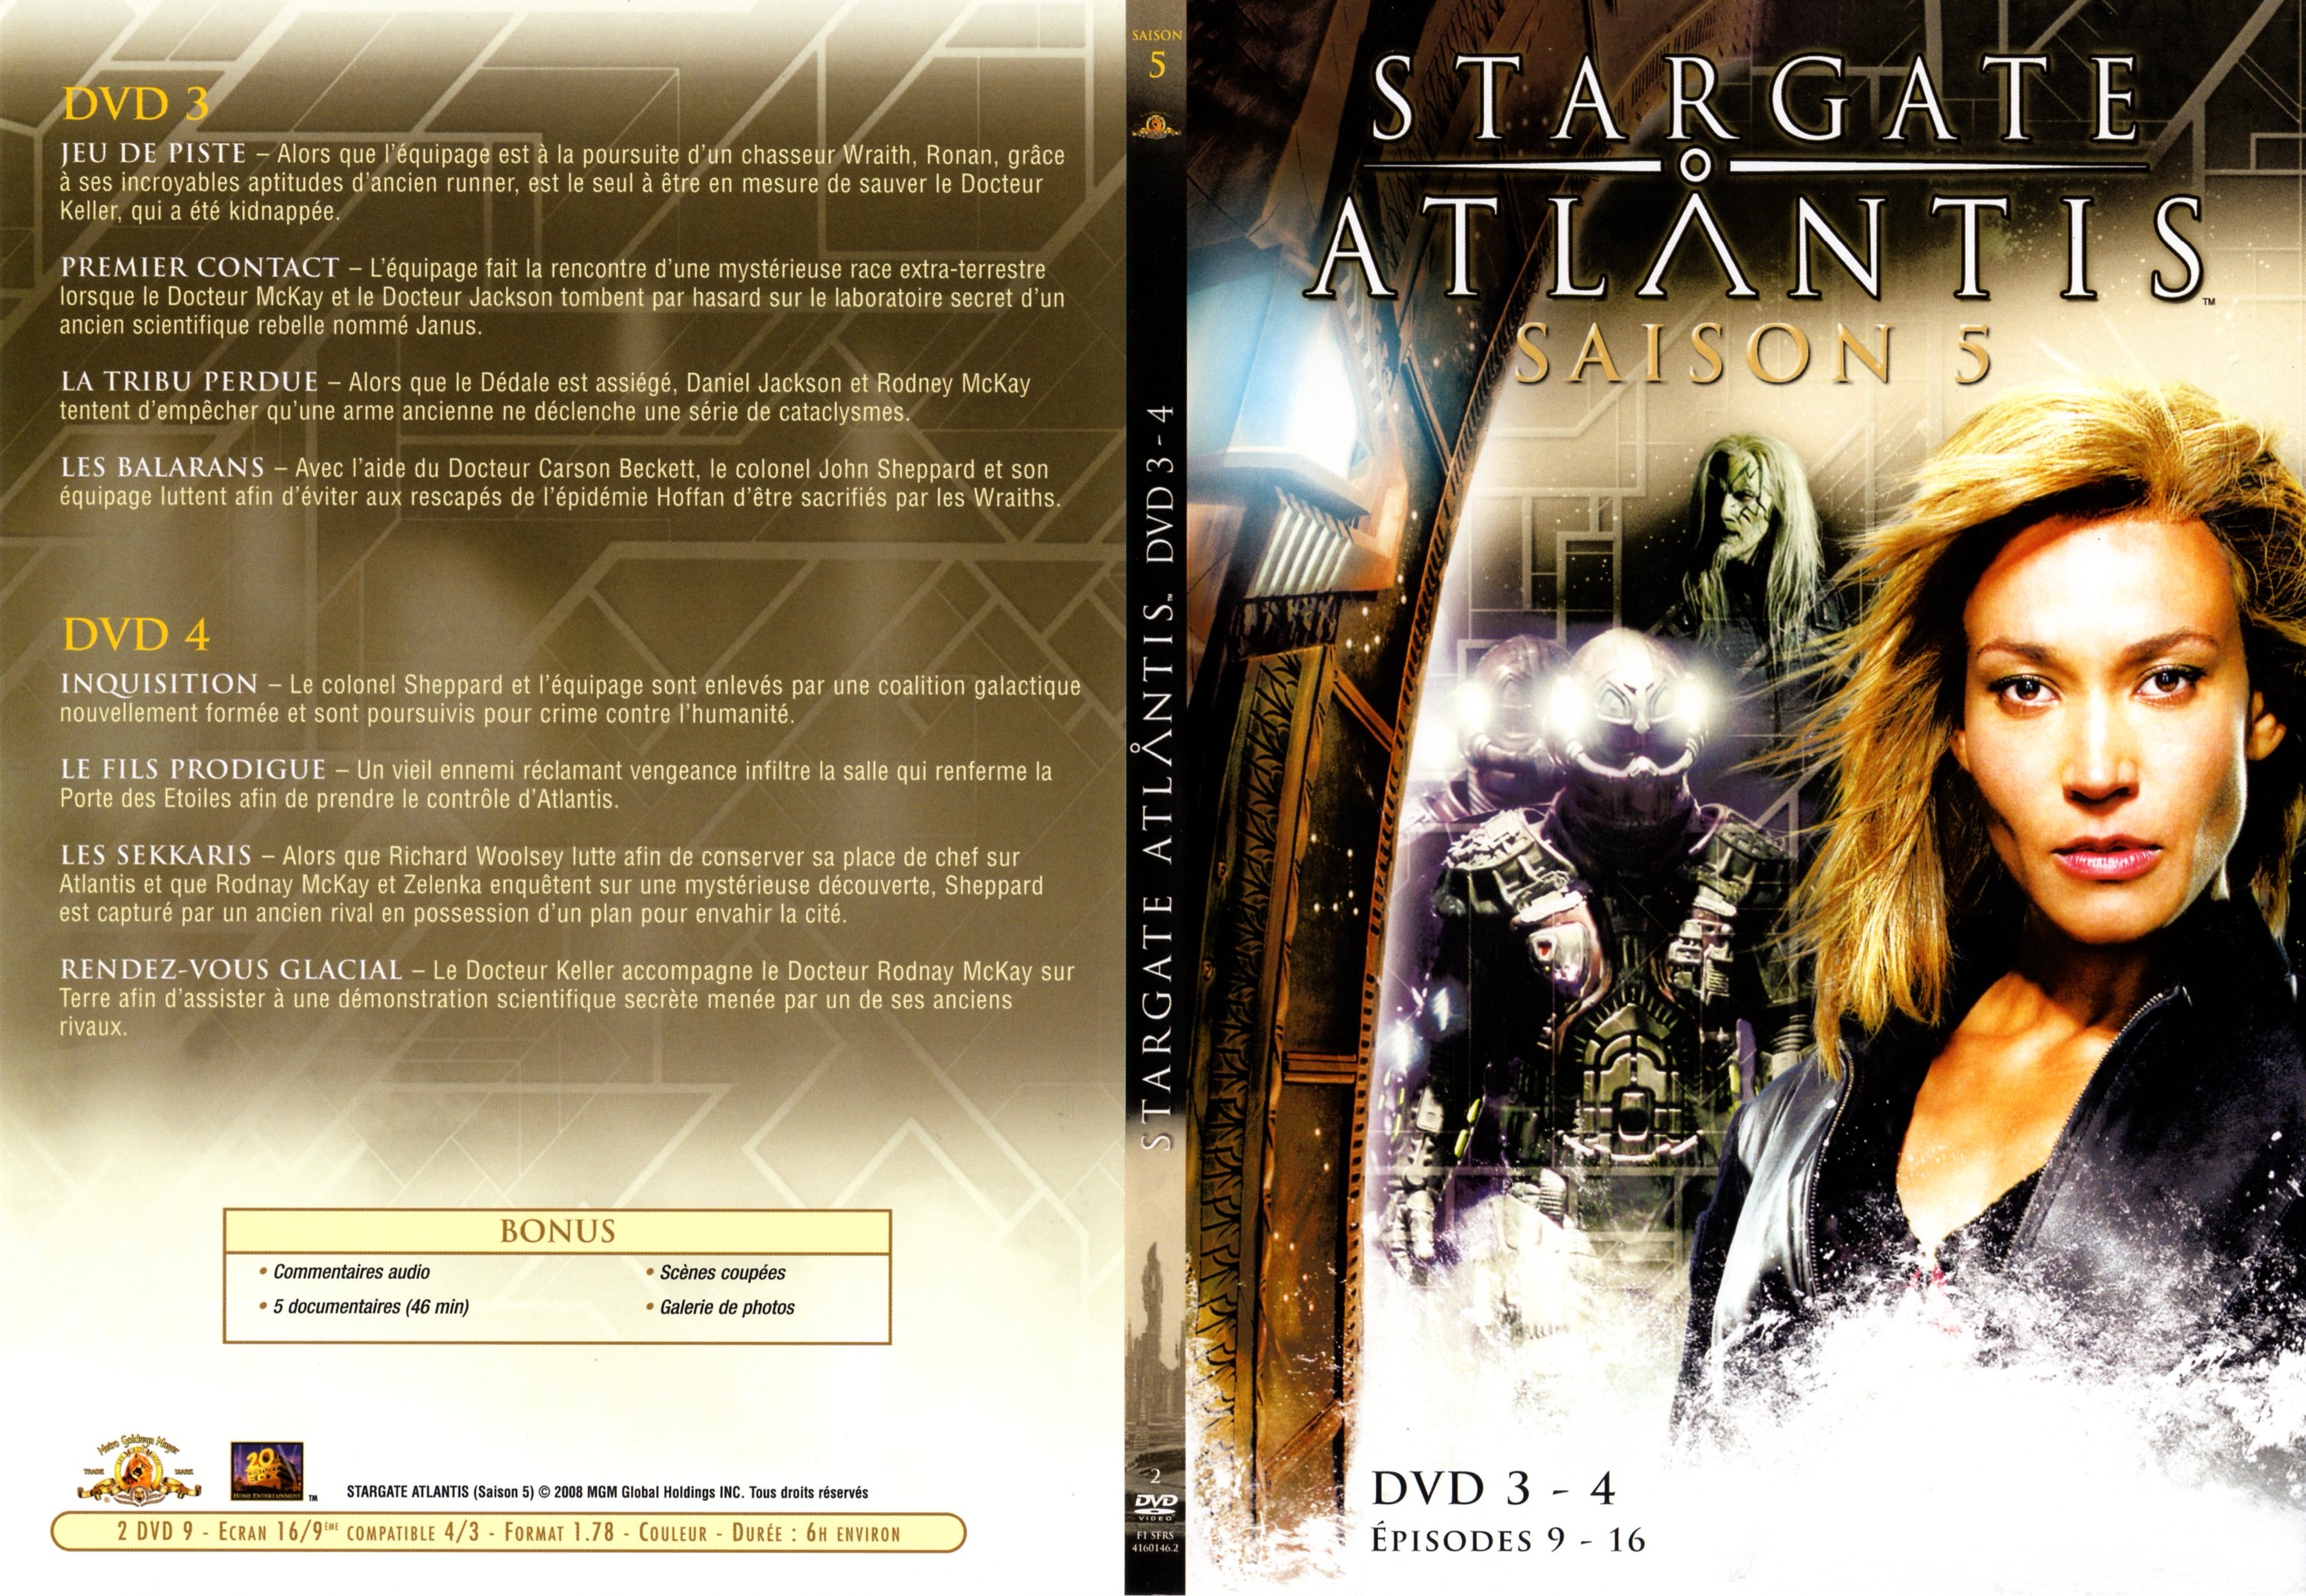 Jaquette DVD Stargate atlantis saison 5 DVD 2